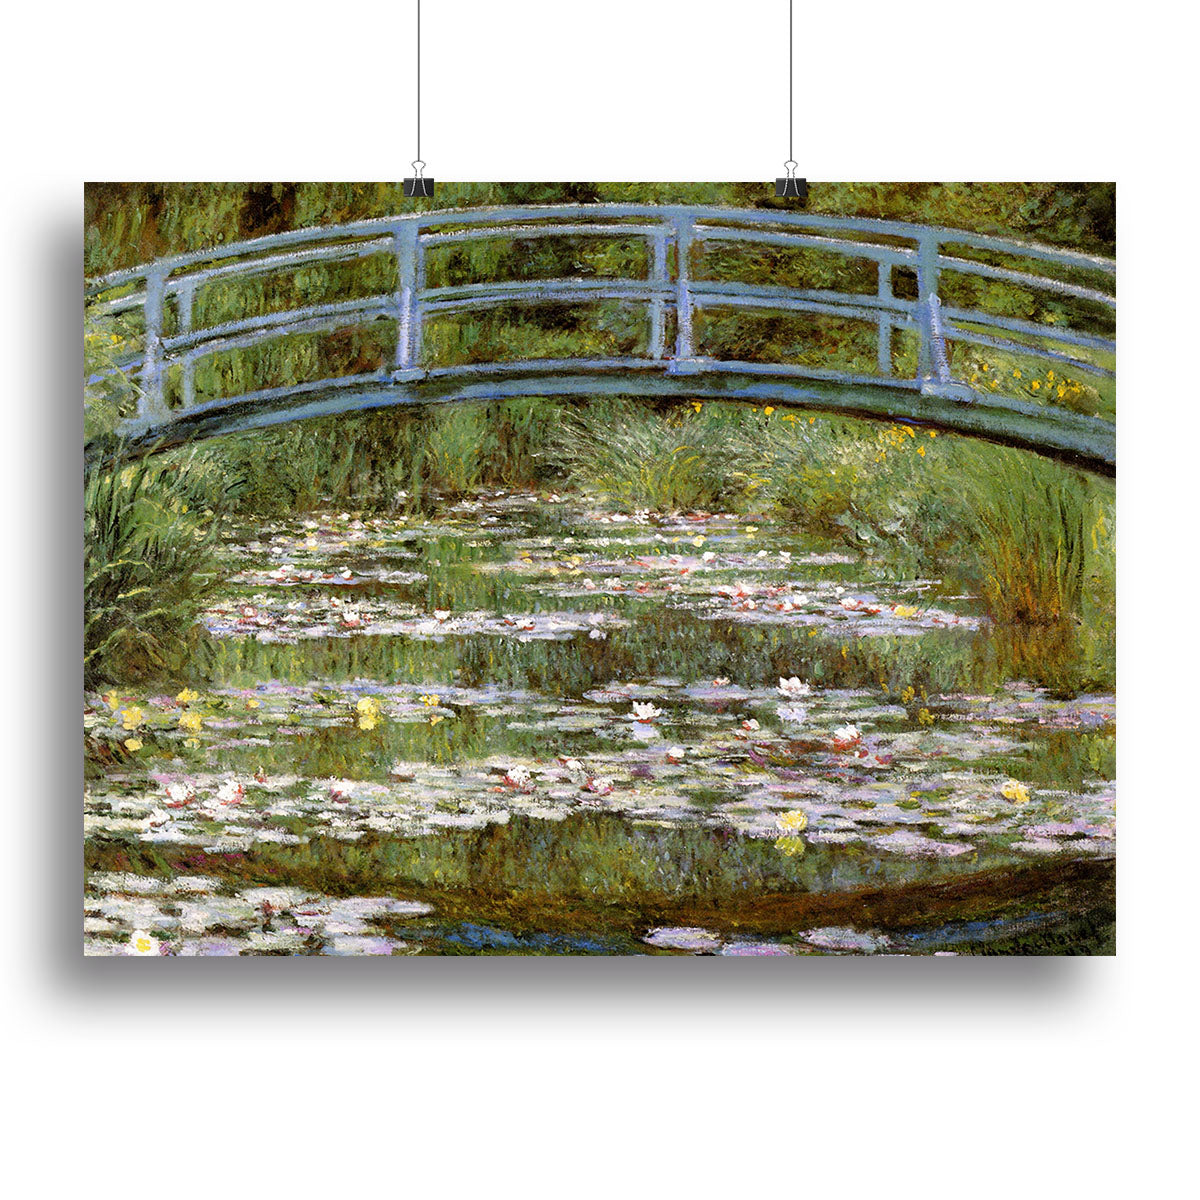 Le Pont Japonais by Monet Canvas Print or Poster - Canvas Art Rocks - 2